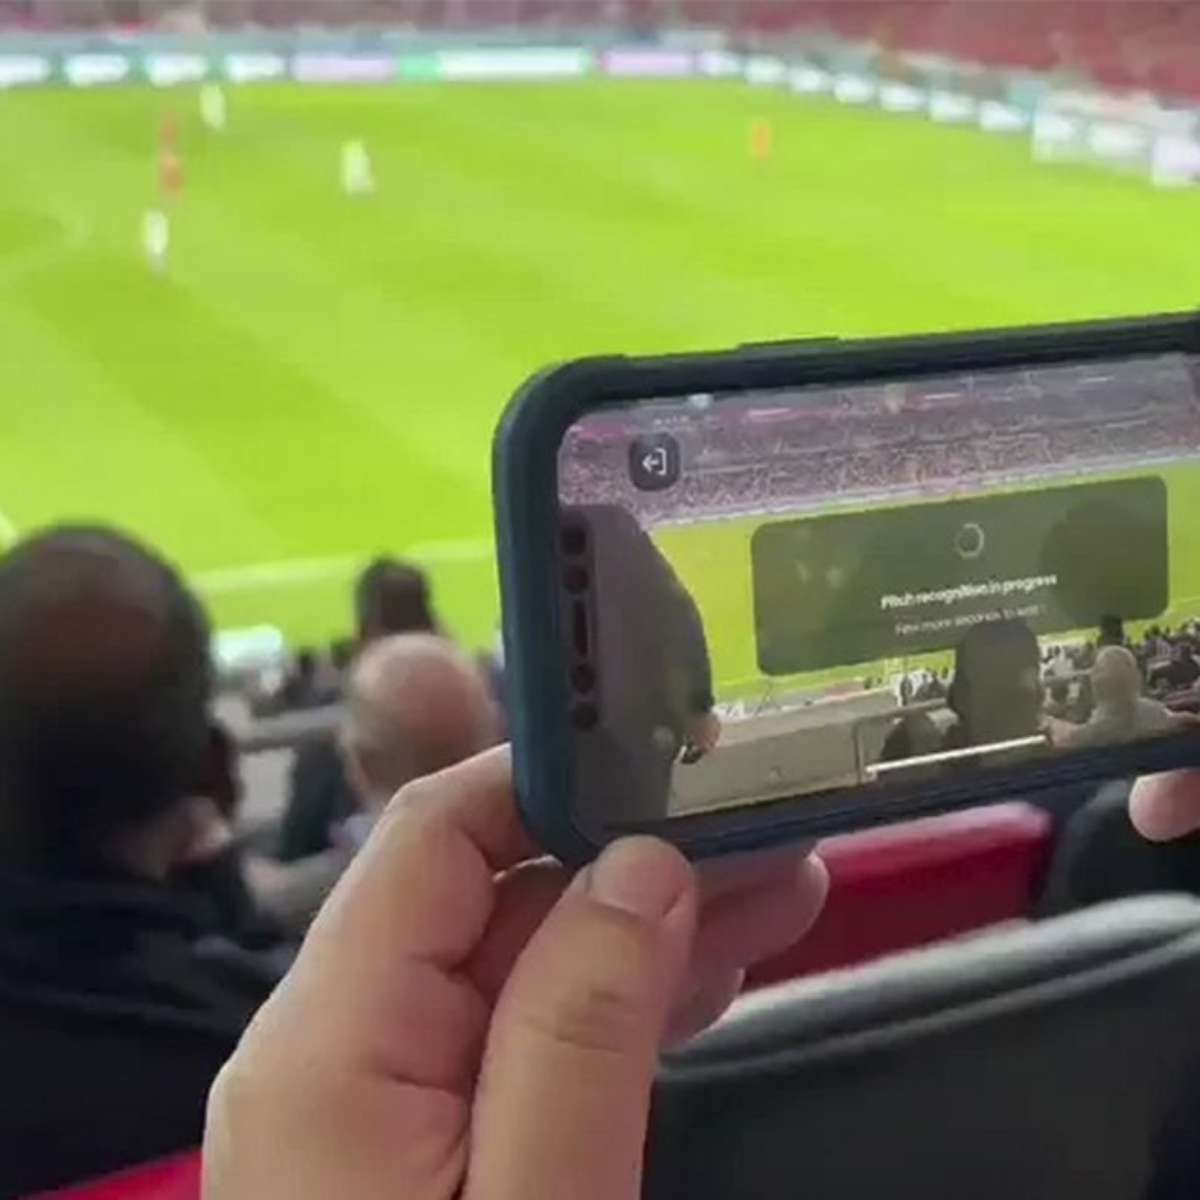 eFootball 2022 Mobile está disponível: veja se o seu smartphone é